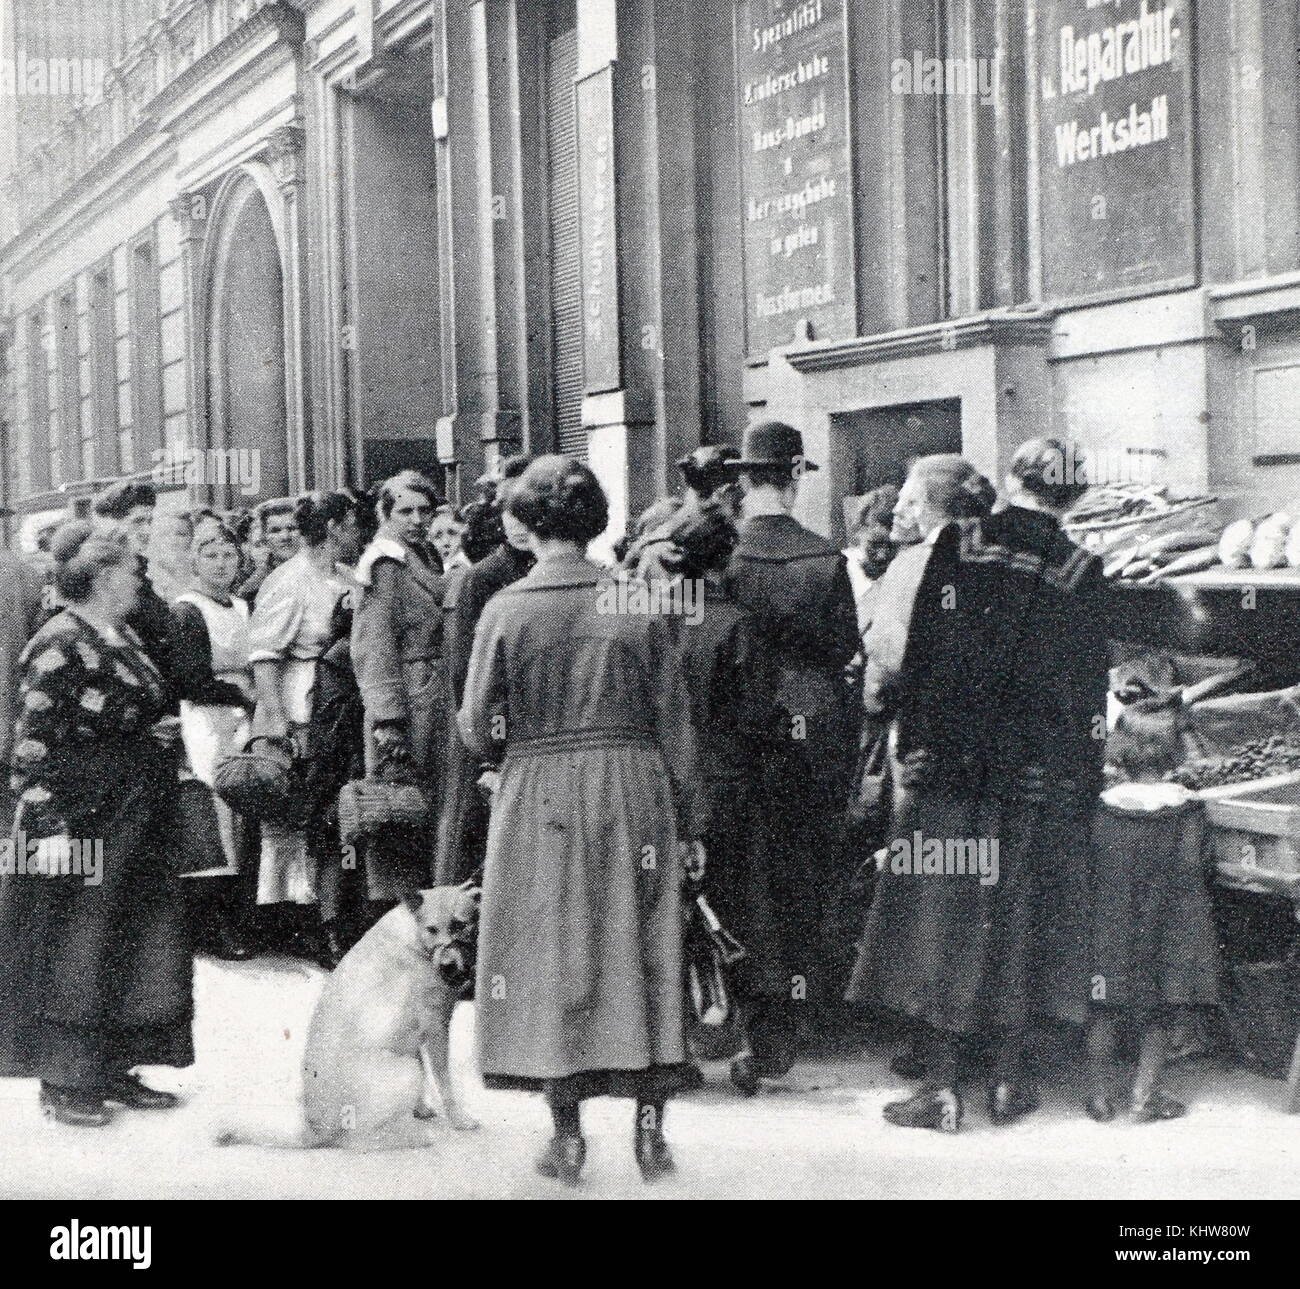 Fotografia di una tipica coda al di fuori di un negozio durante la scarsità di cibo in Berlino. In data xx secolo Foto Stock